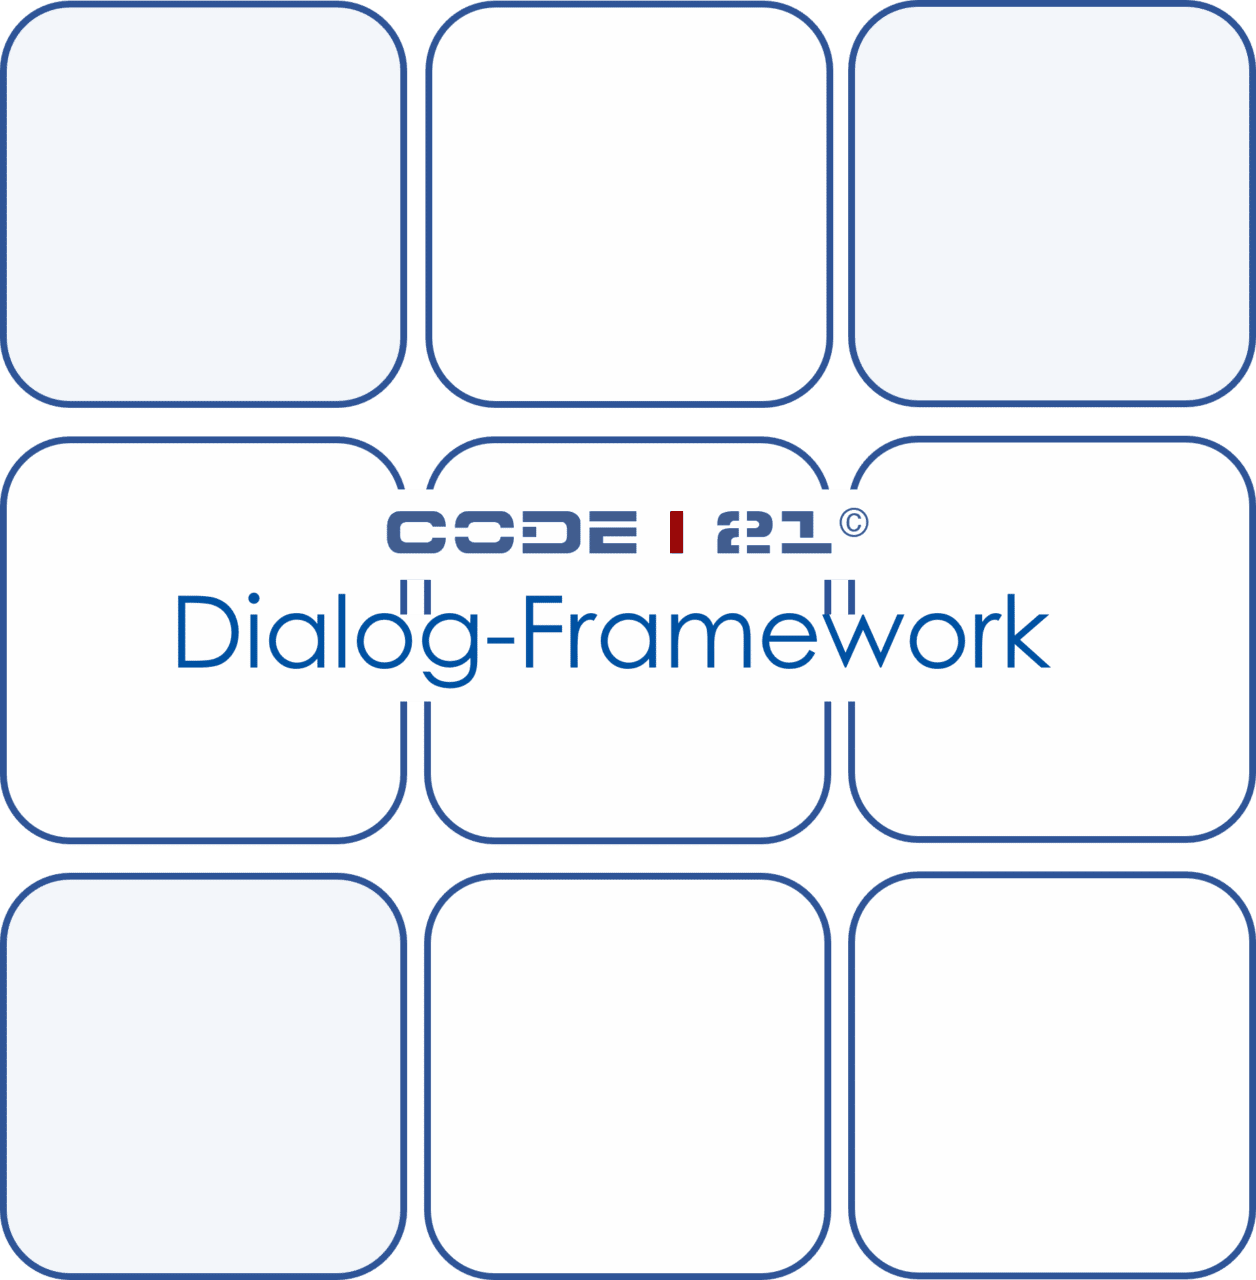 Code I 21 Dialog Framework